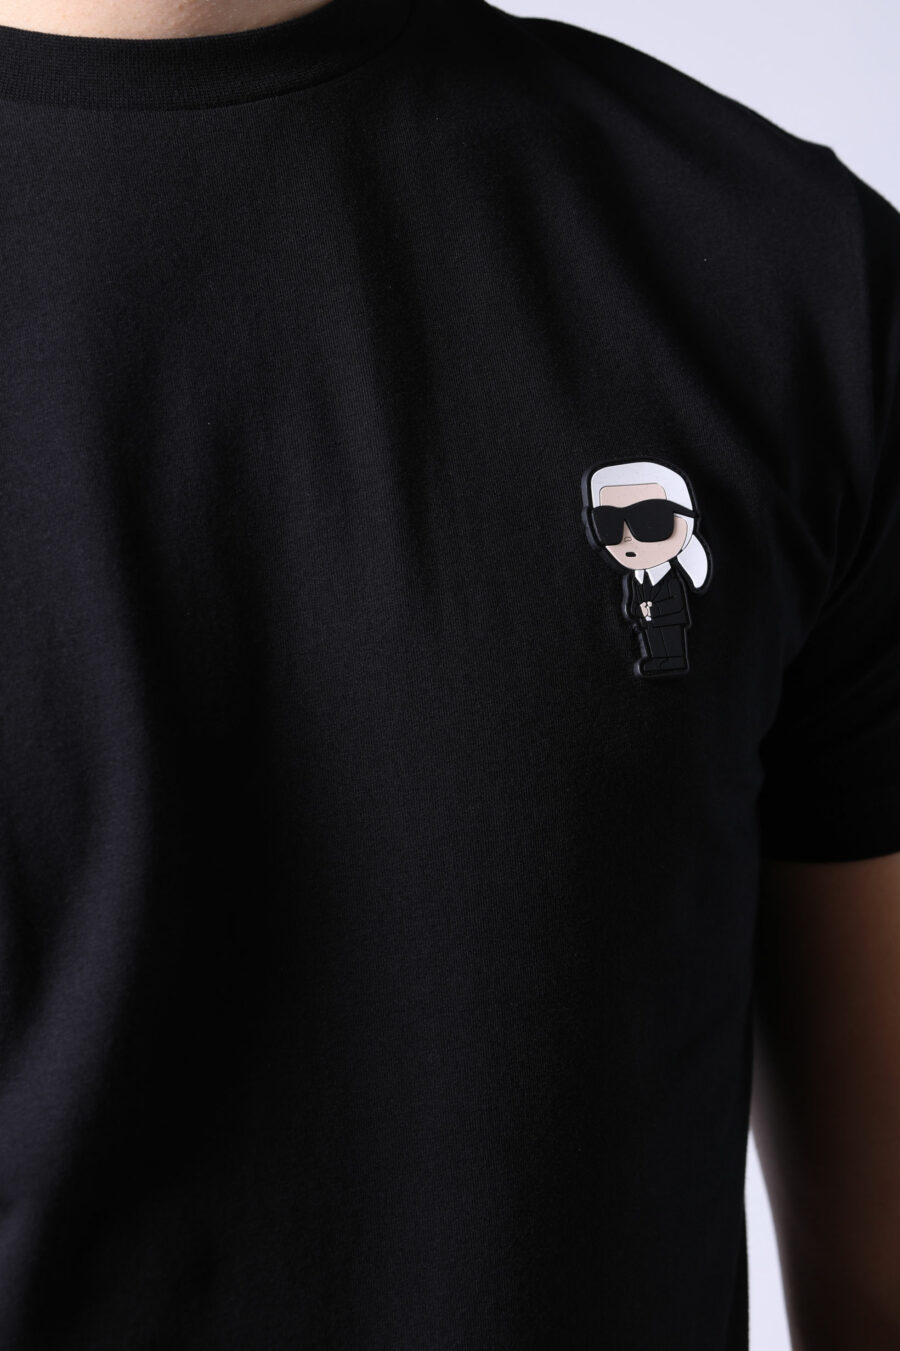 Black T-shirt with logo "ikonik" - Untitled Catalog 05721